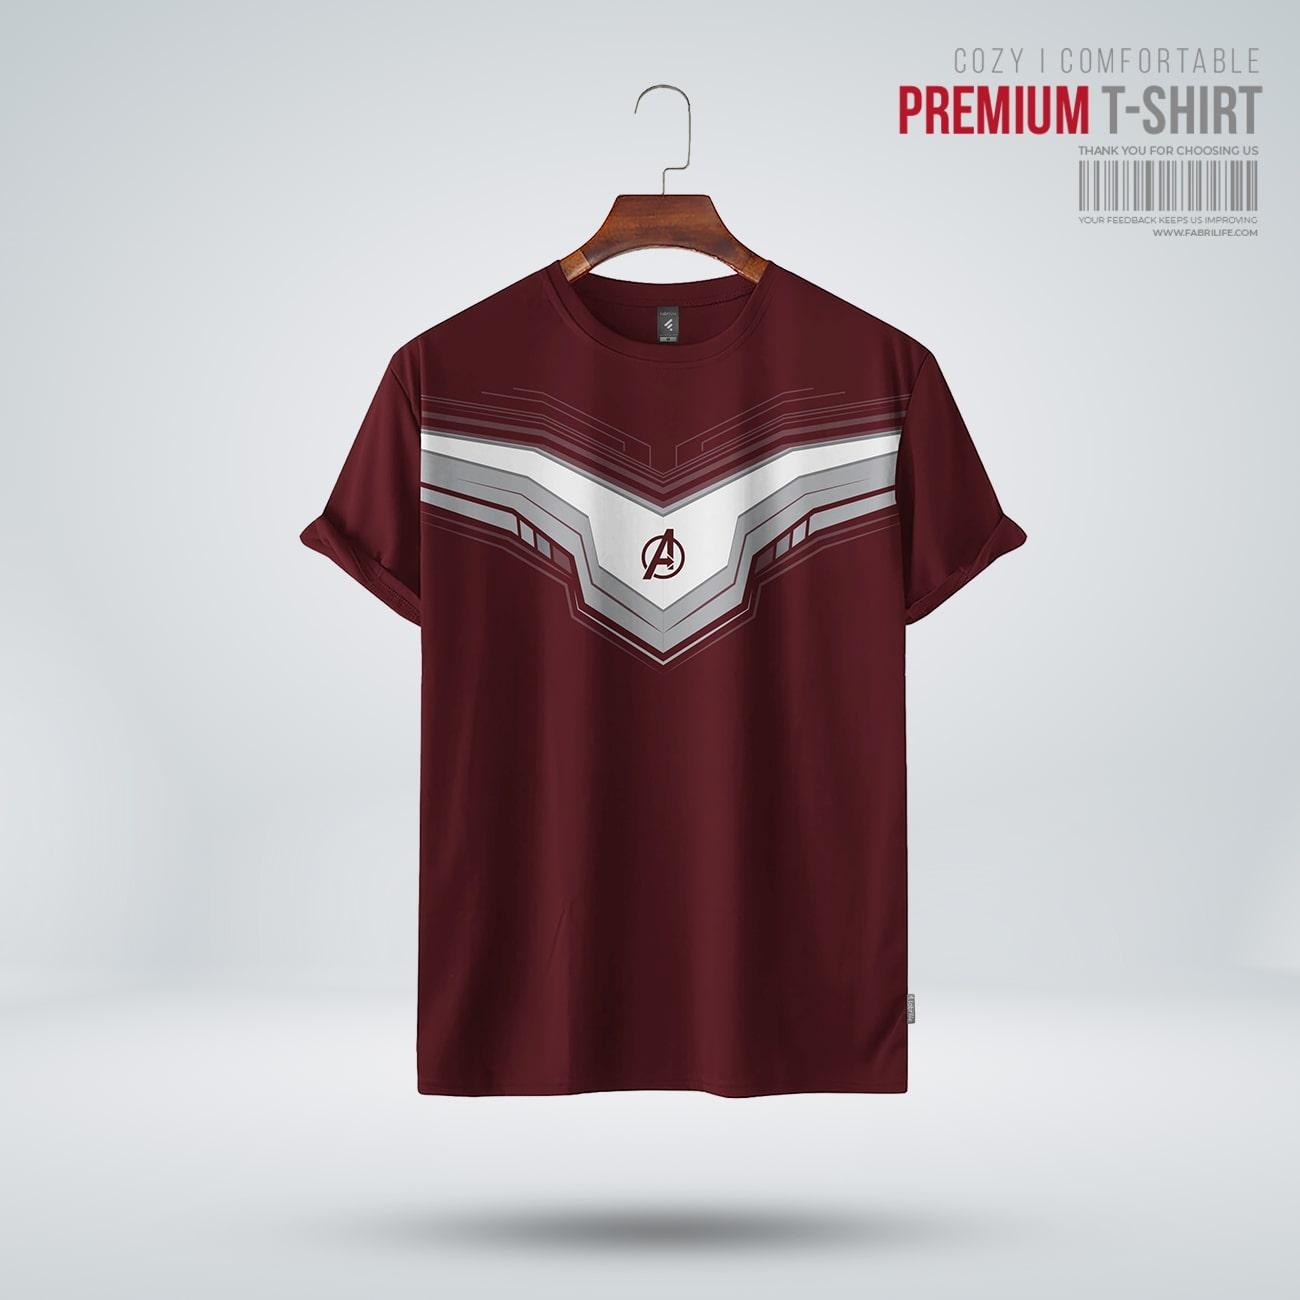 Fabrilife Mens Premium T-shirt - Interdimension